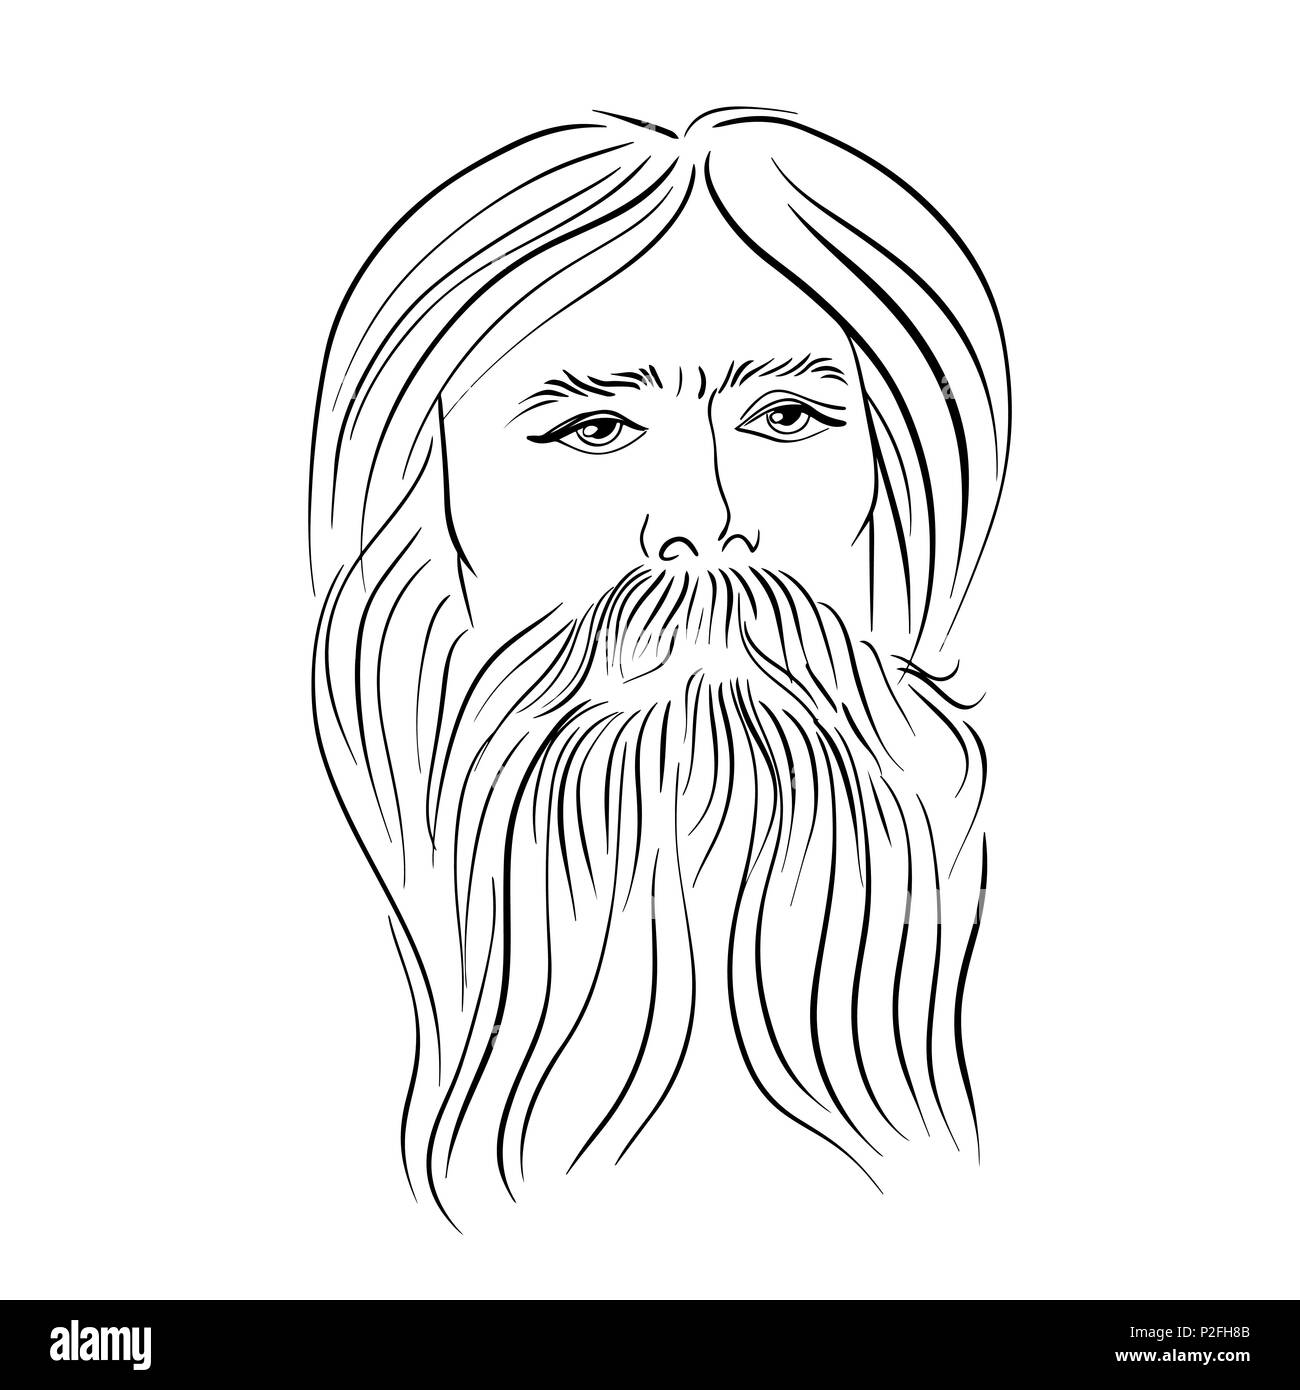 Disegnata a mano il ritratto di uomo barbuto. In stile vintage. Illustrazione Vettoriale. Illustrazione Vettoriale